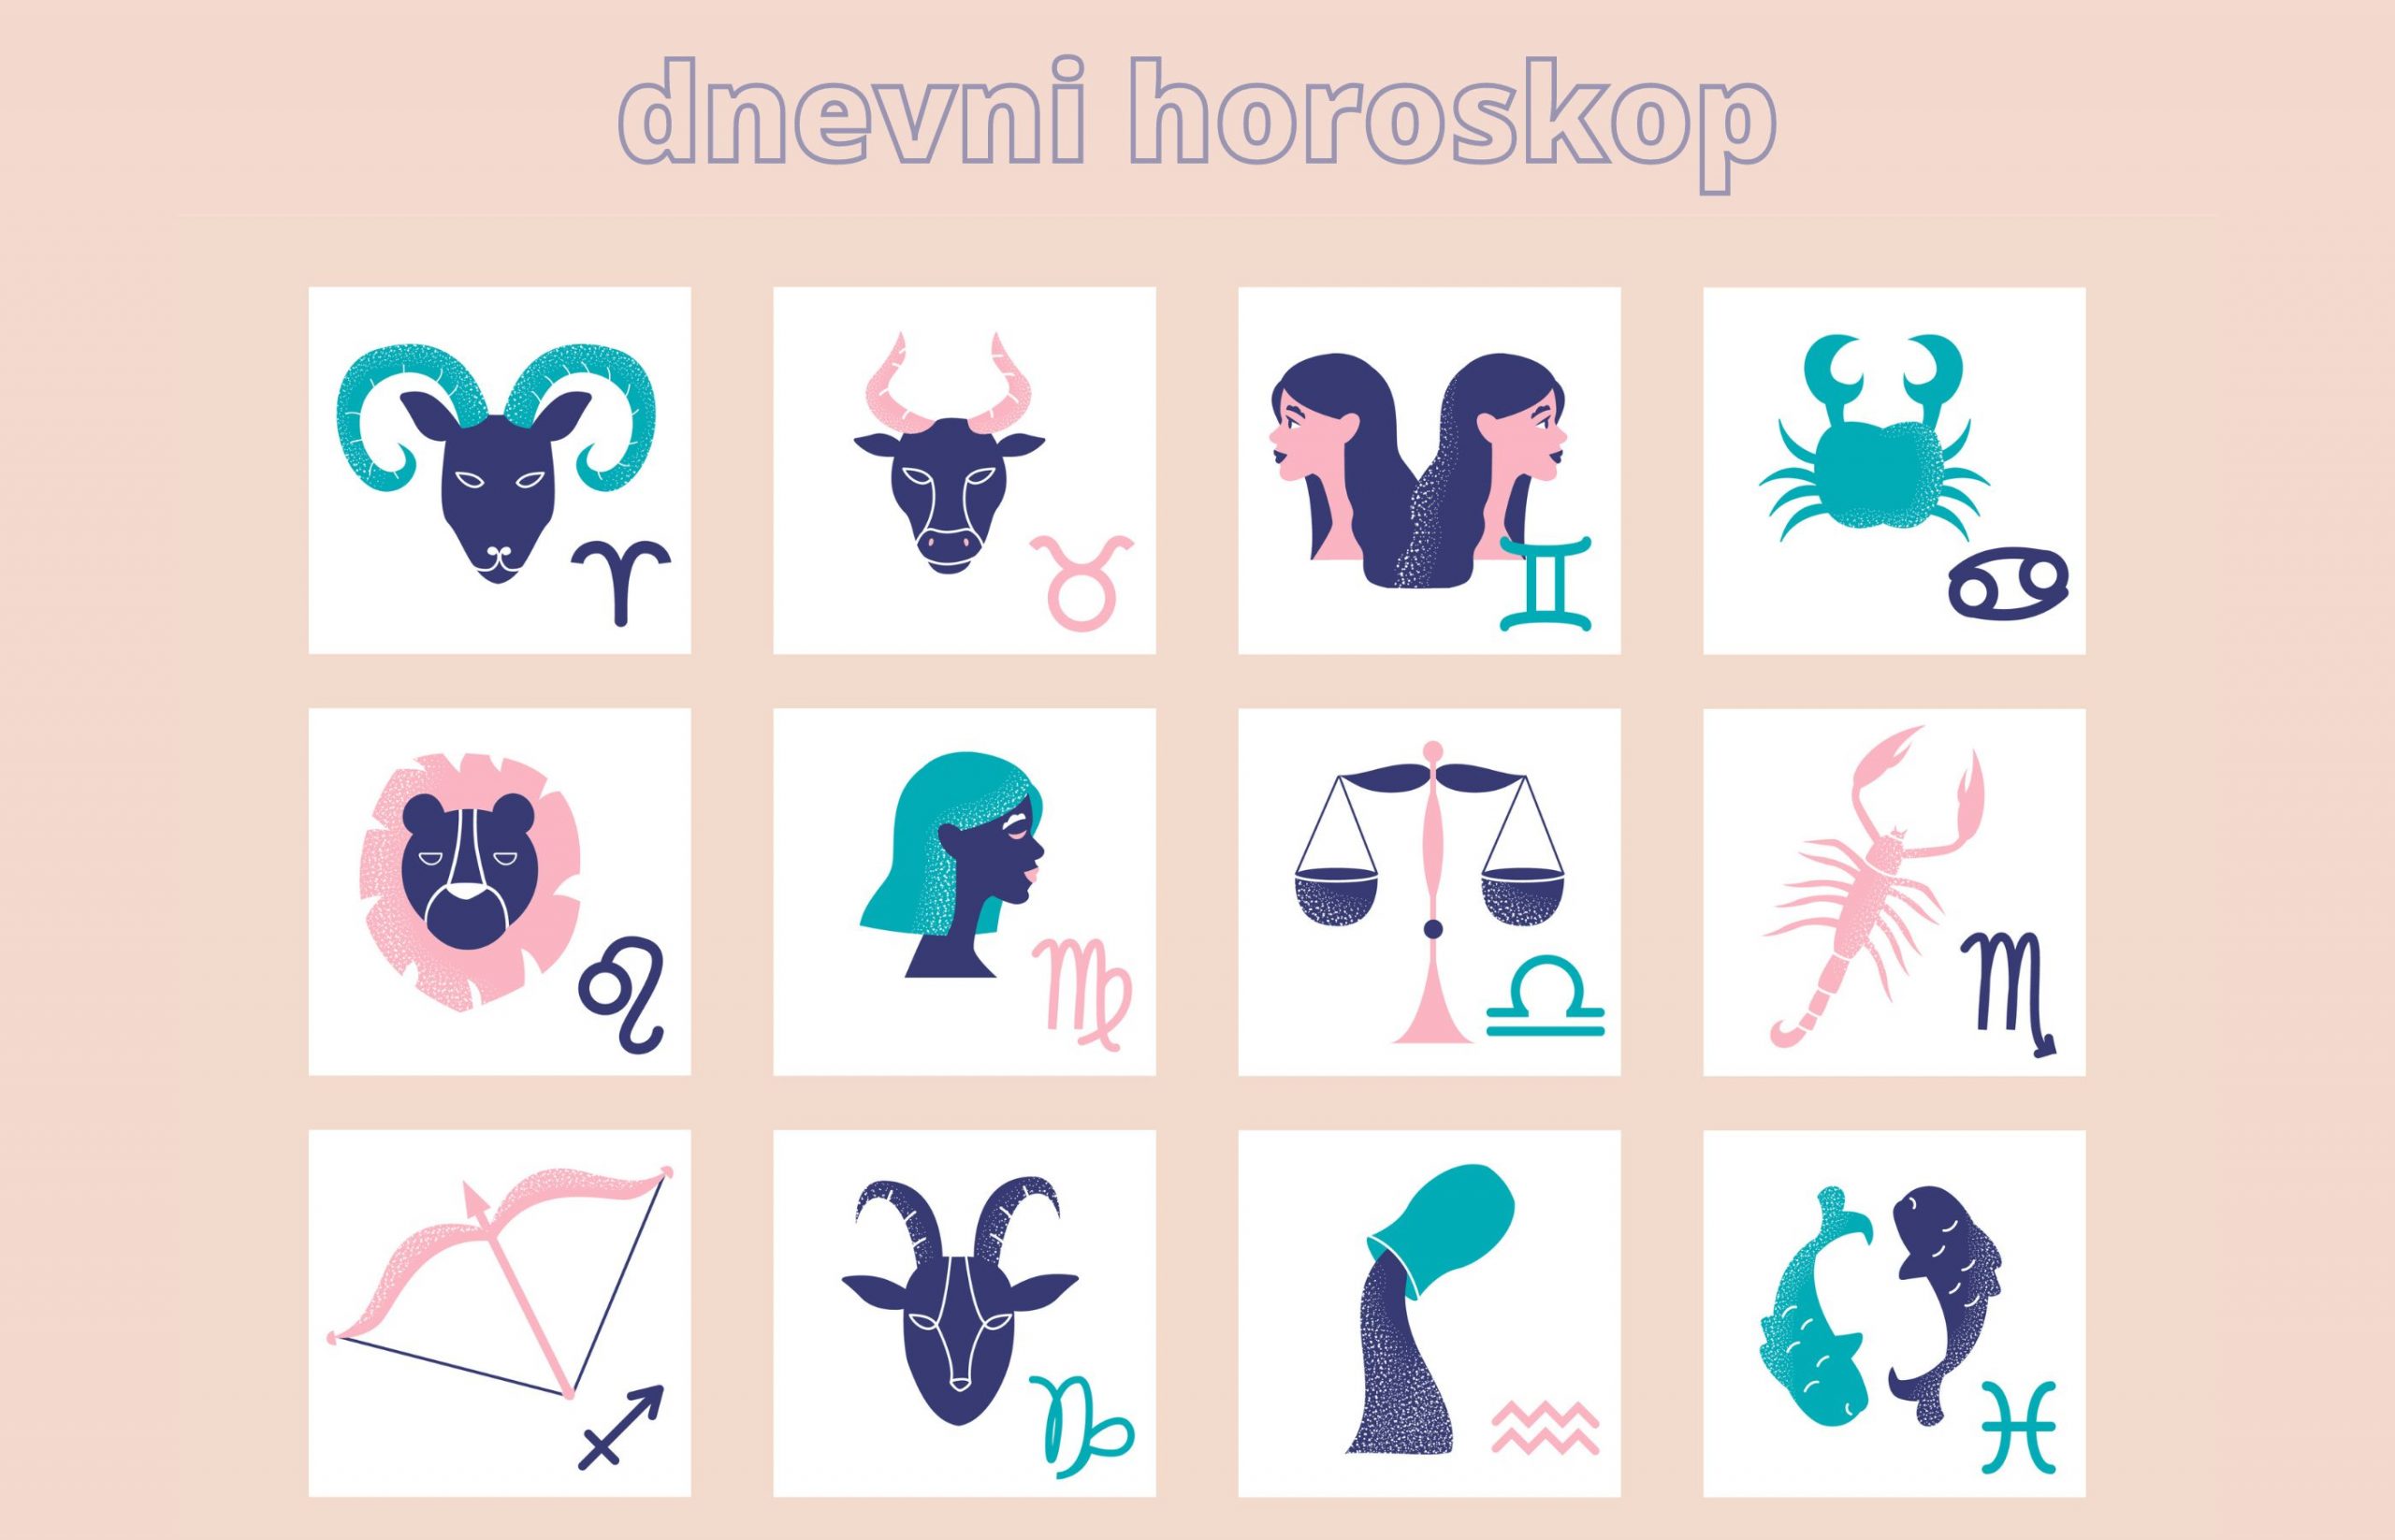 Horoskop devica dnevni ljubavni